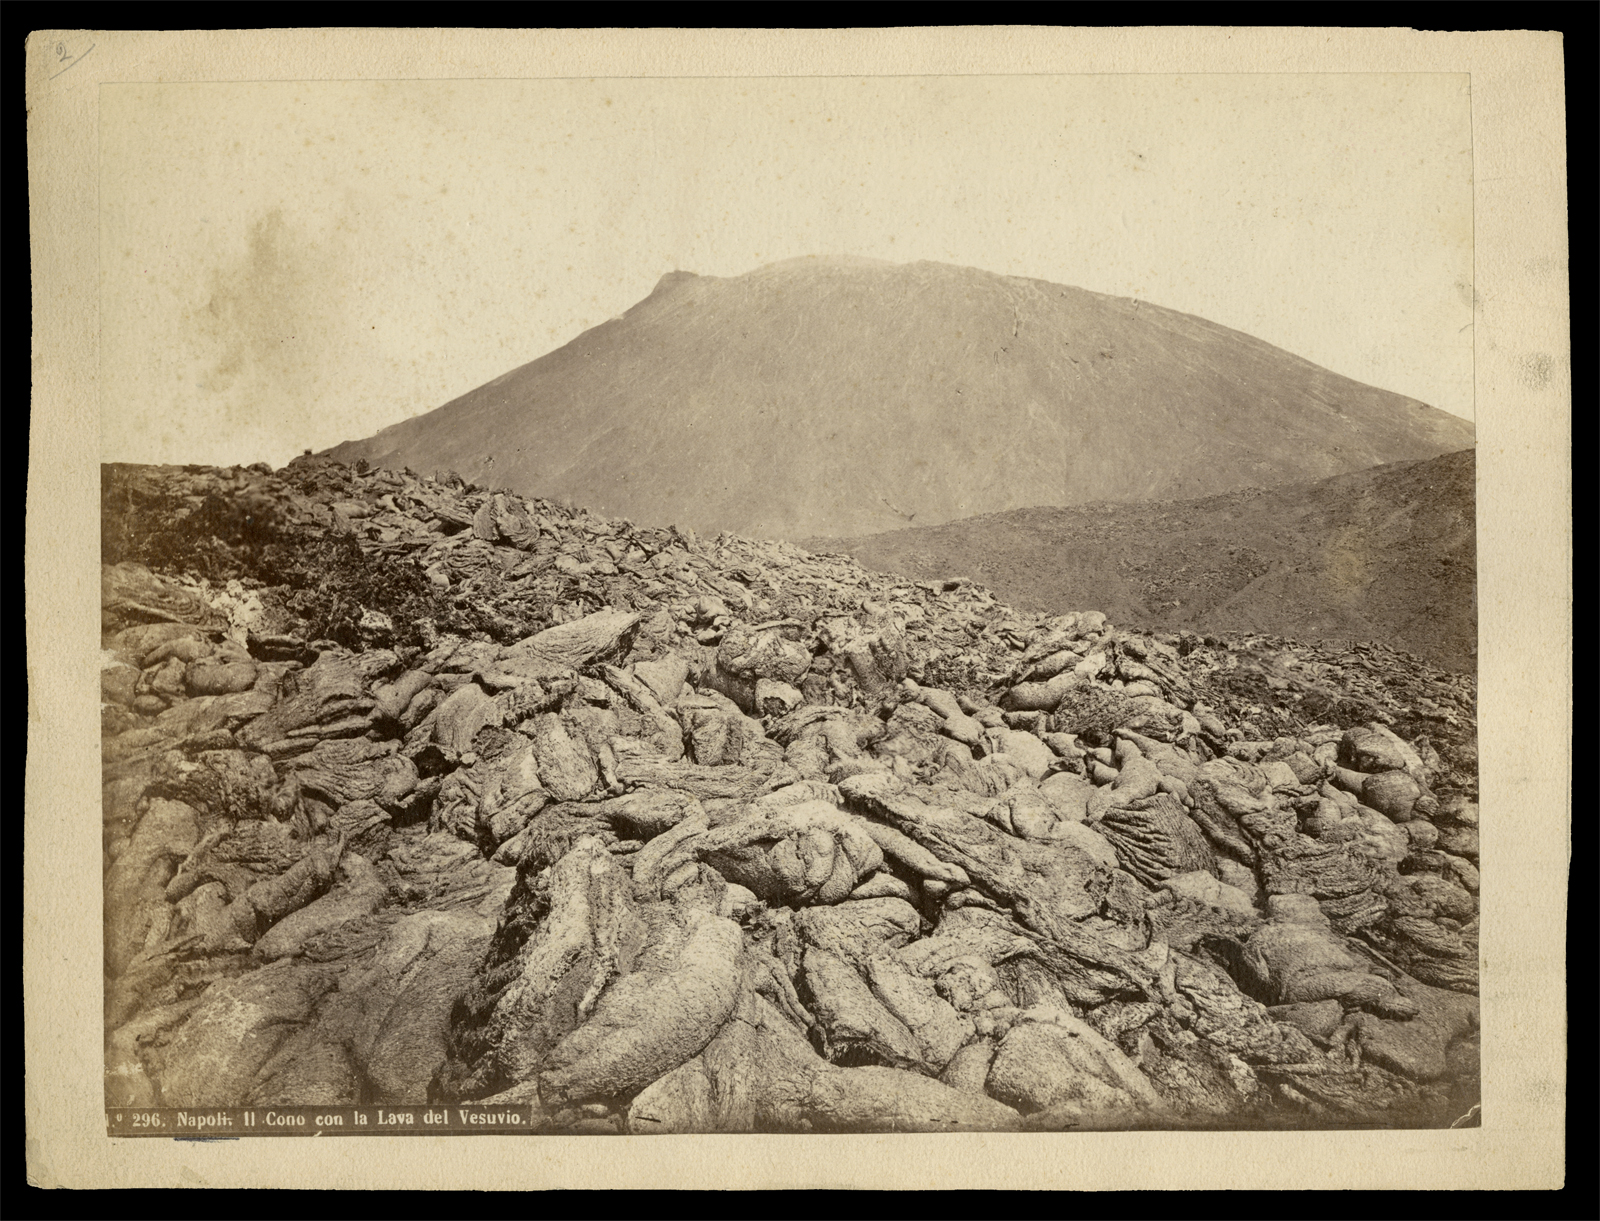 Rive, Roberto: No. 297. Napoli. Il cono con la Lava del Vesuvio, um 1865–1870